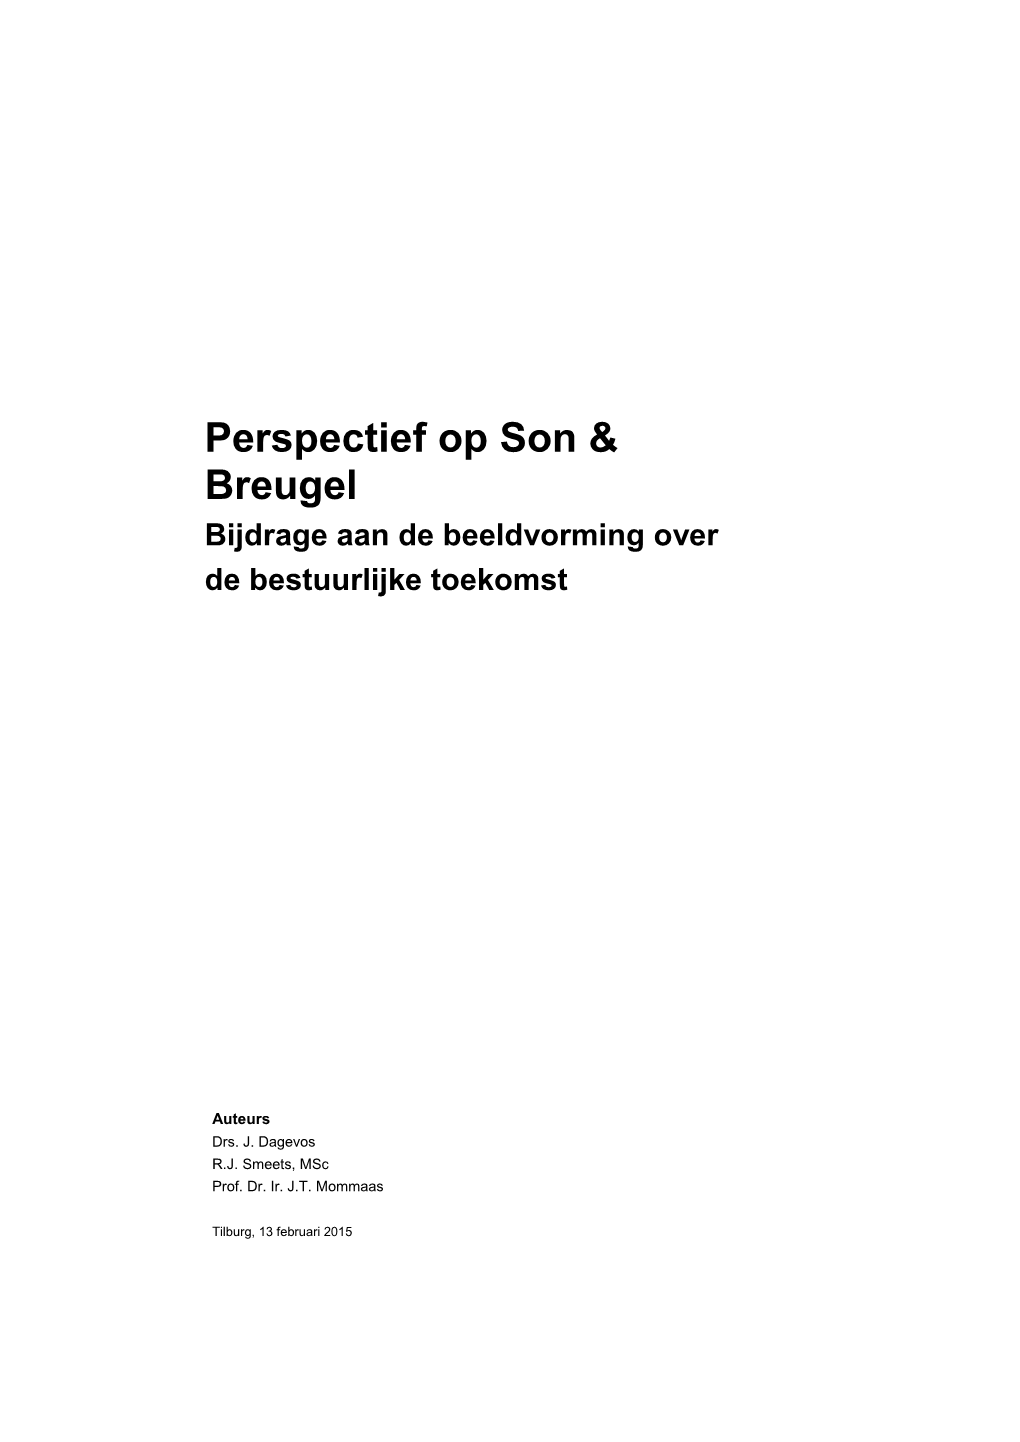 Perspectief Op Son & Breugel